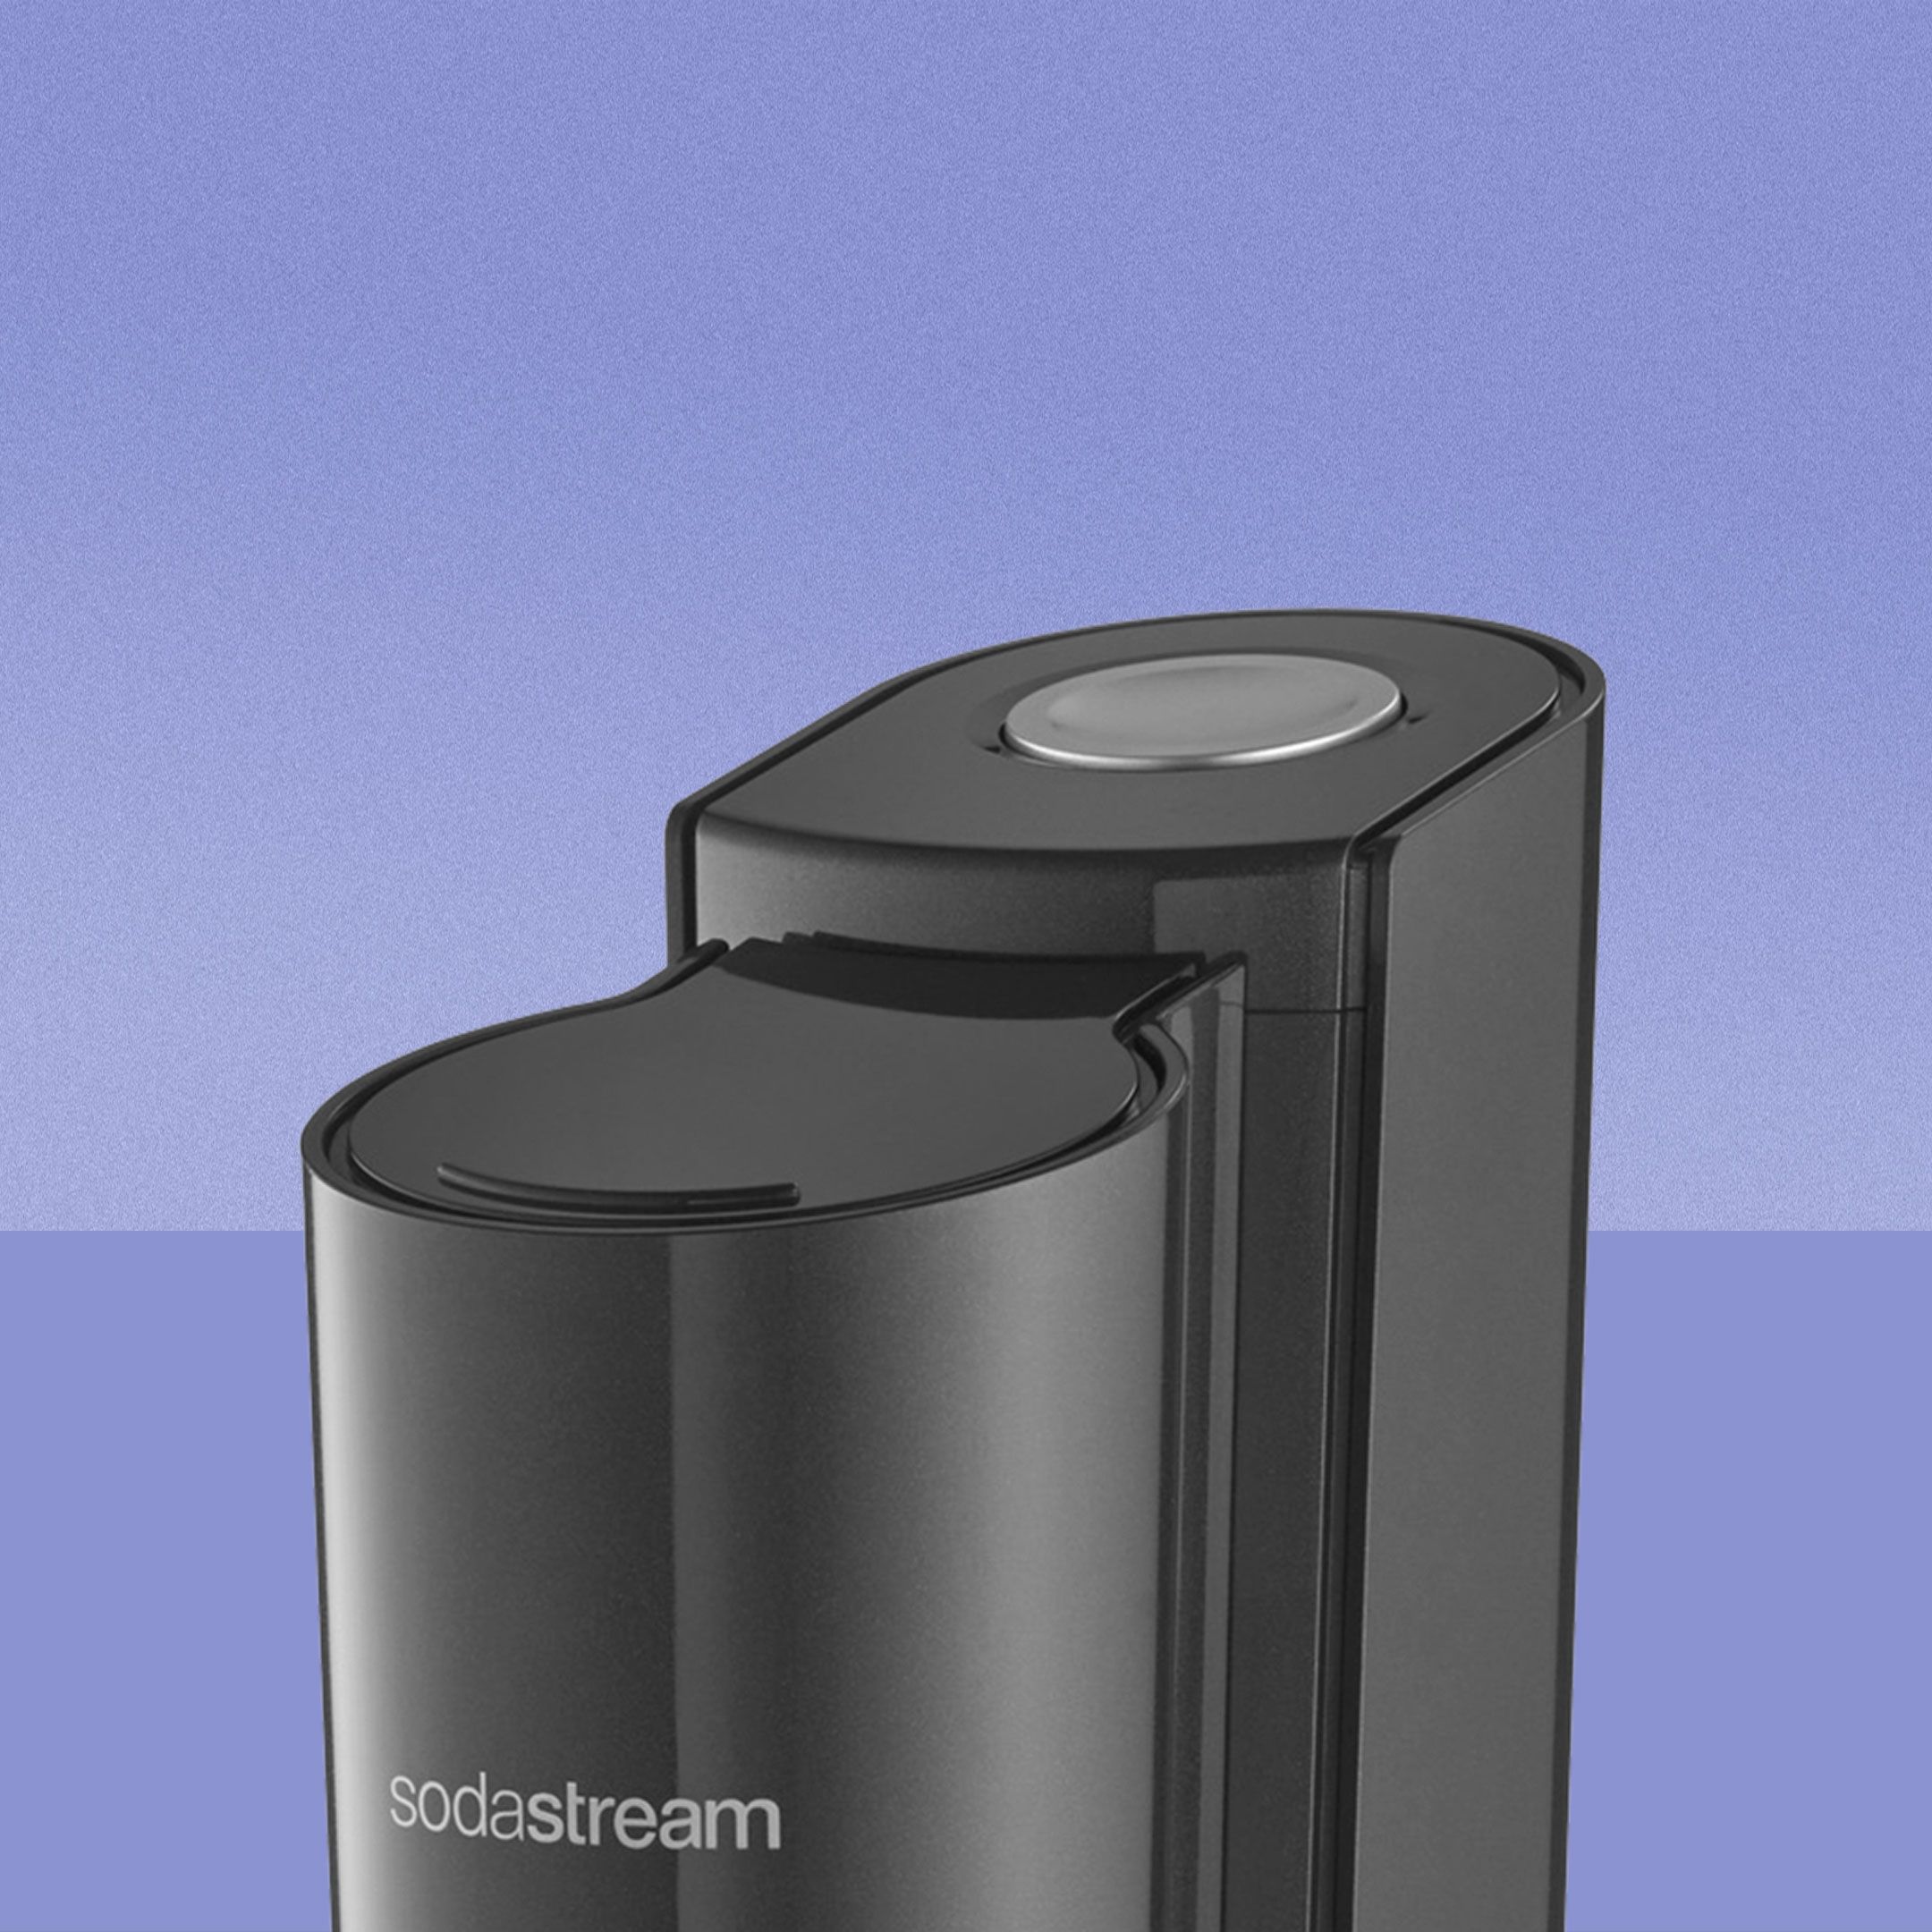 Weniger schön ist der Knopf des SodaStreams gestaltet